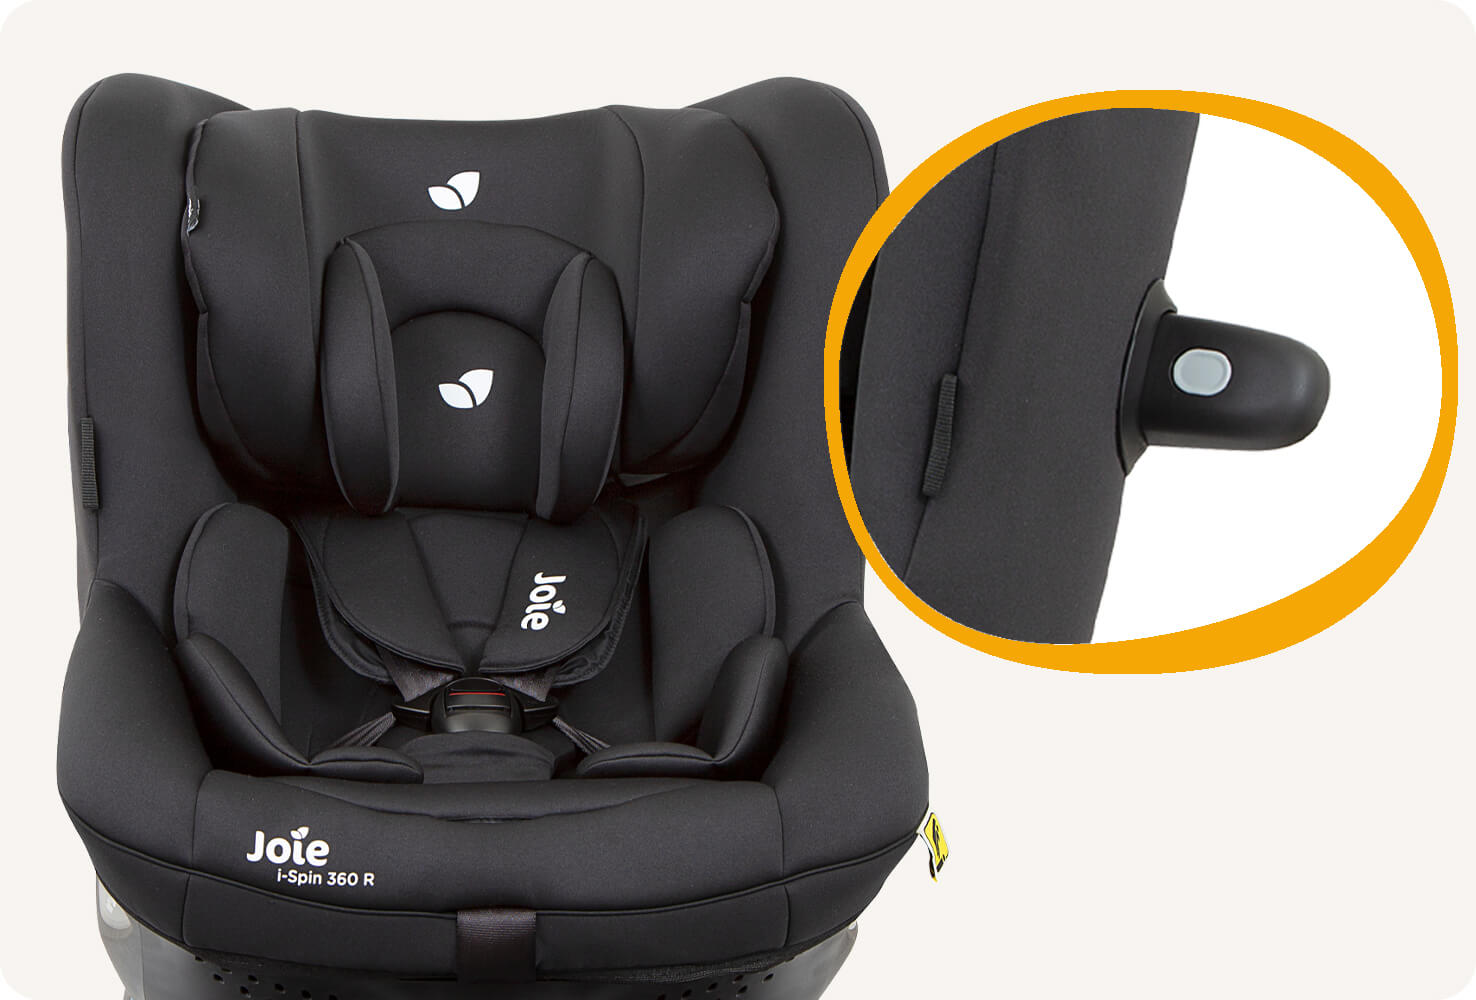 Drehbarer Kindersitz Joie i-Spin 360 R in Schwarz mit einer Detailaufnahme des aufsteckbaren Seitenaufprallschutzelements.